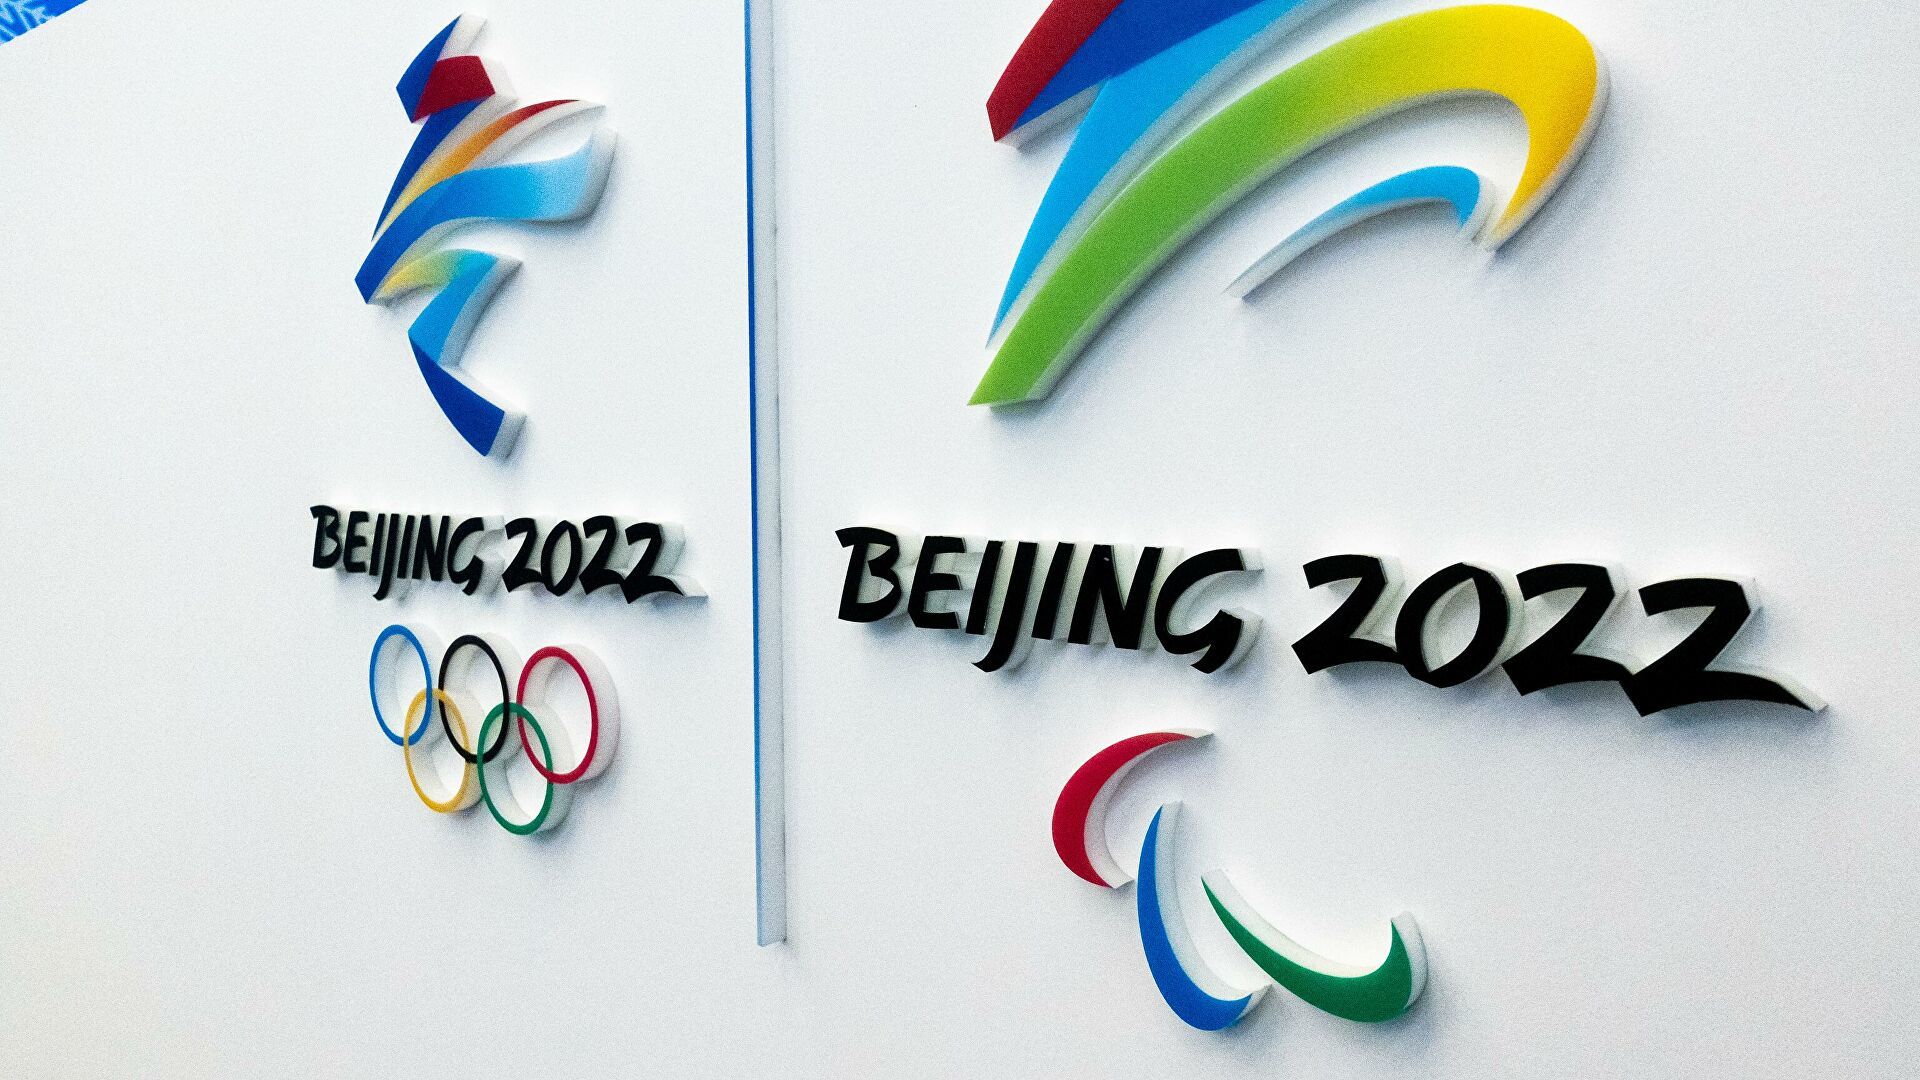 Сборная Норвегии досрочно стала победителем медального зачета Олимпиады-2022 в Пекине, Россия – восьмая